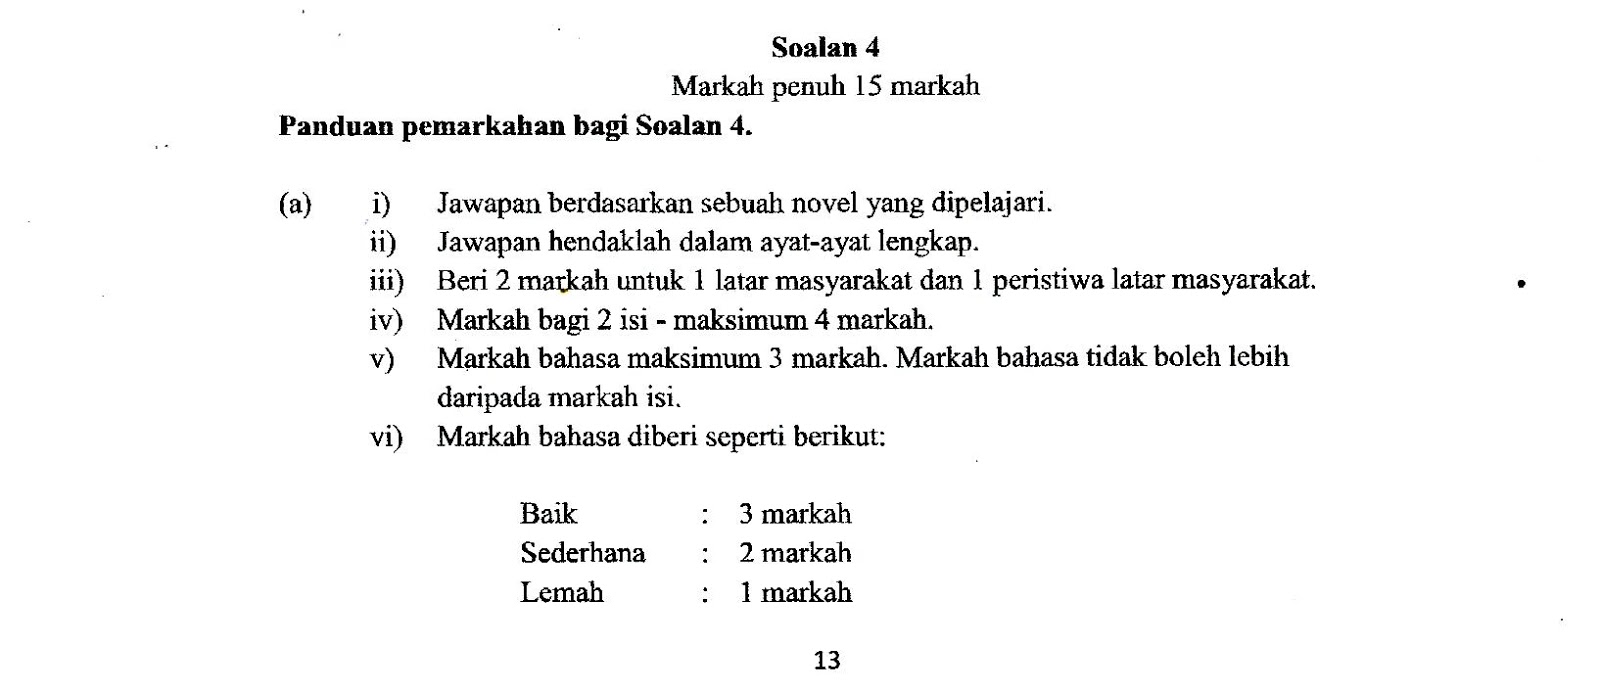 Contoh Soalan Kbat Bahasa Melayu Tingkatan 4 - contoh Core